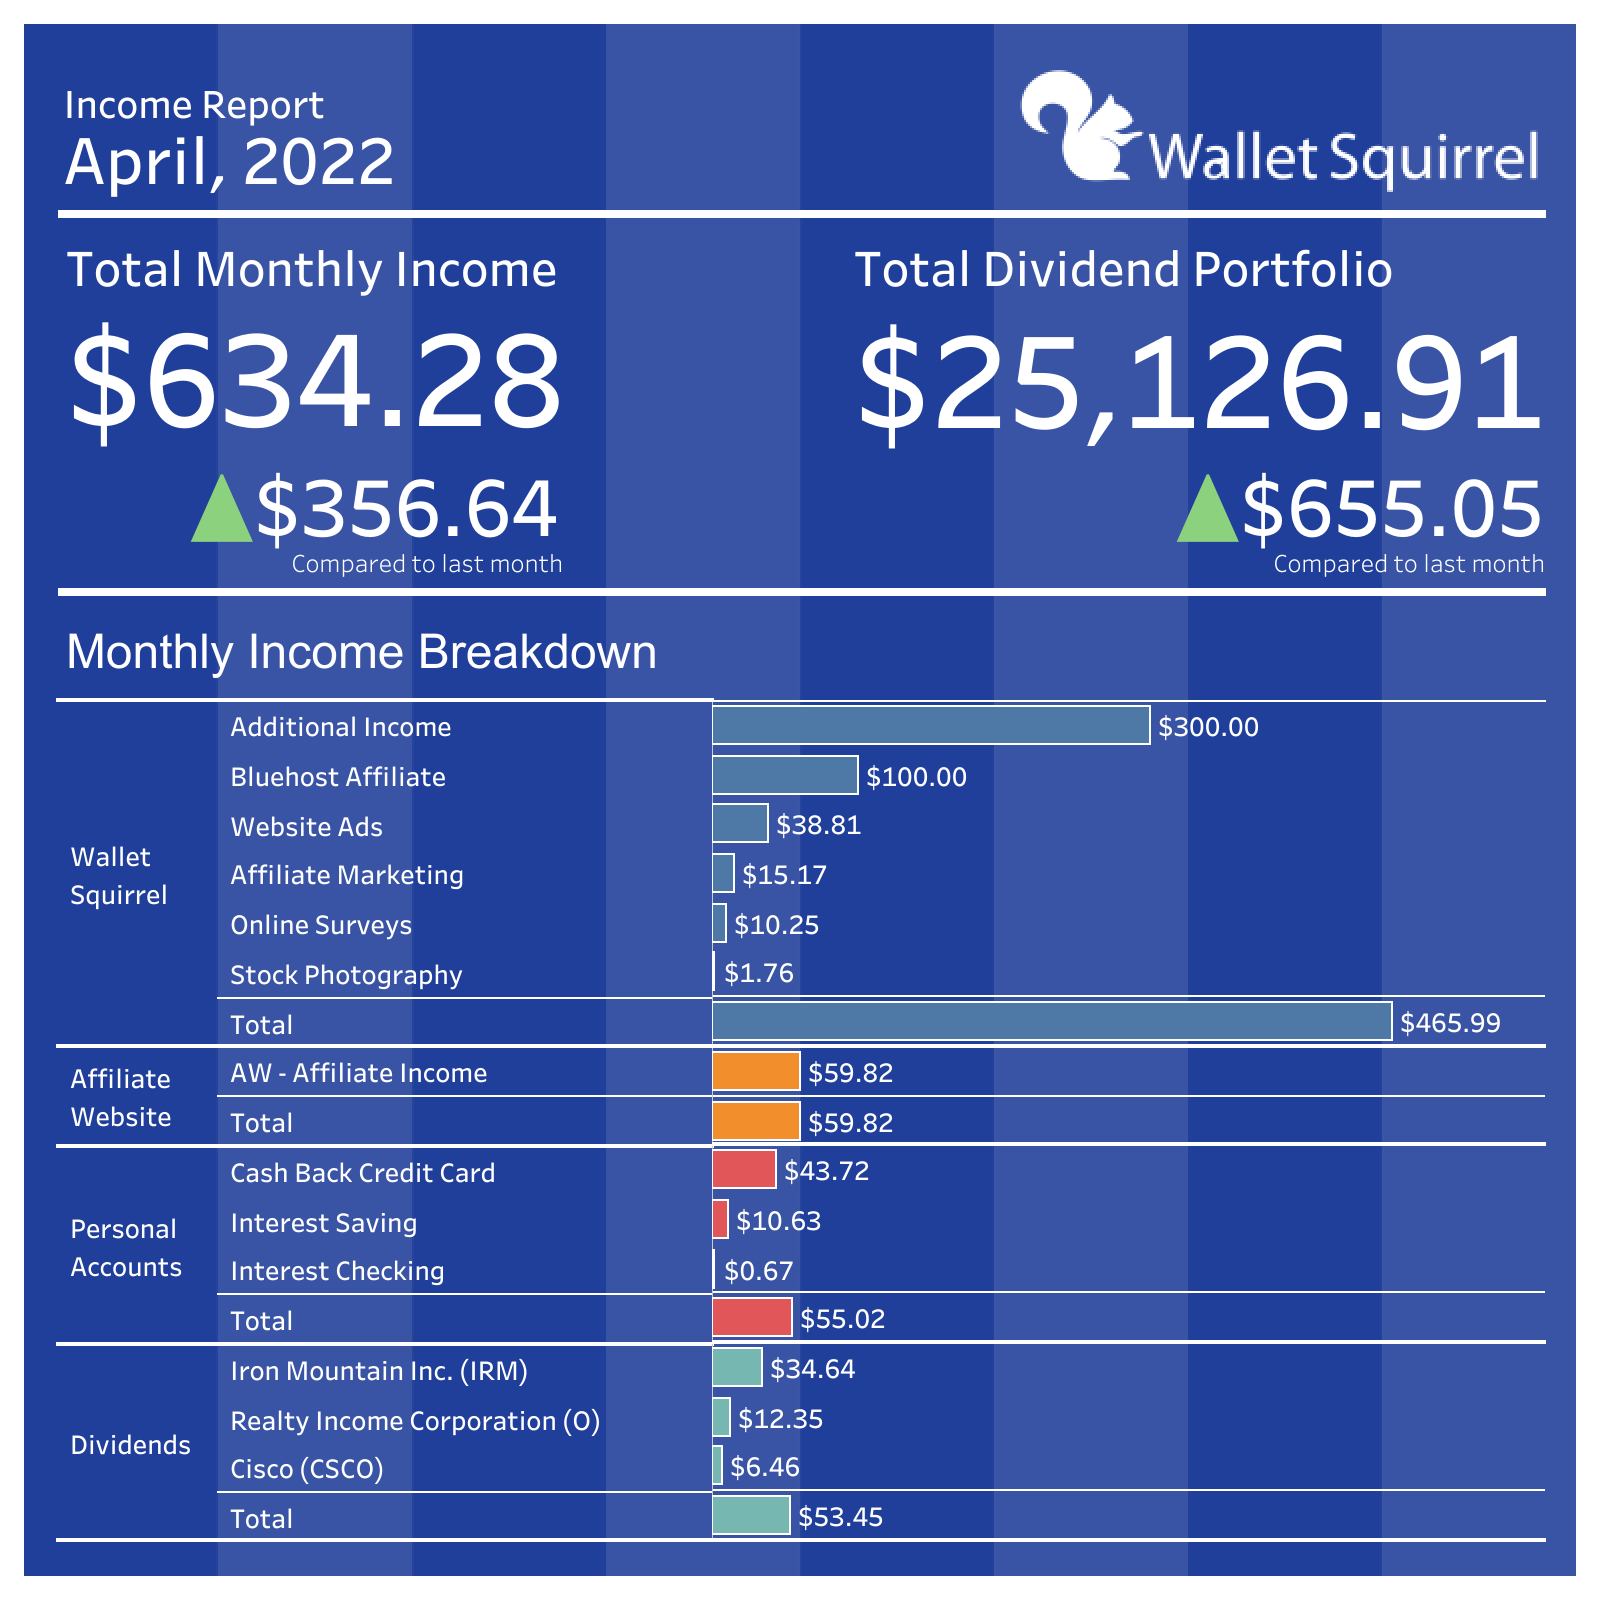 April 2022 Income Report